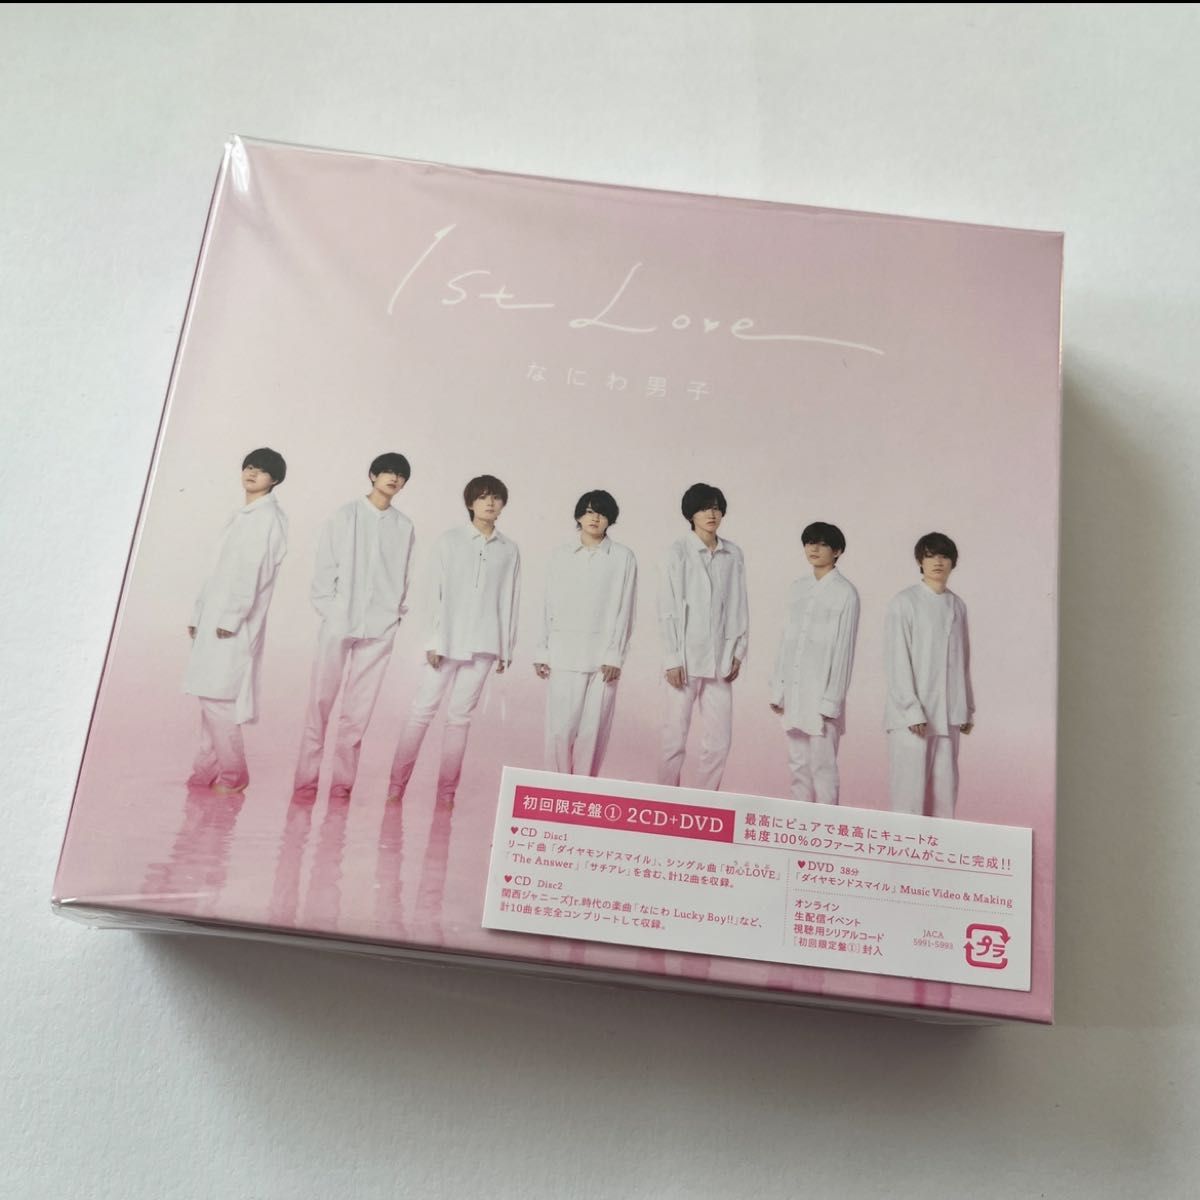 なにわ男子◇新品初回限定盤1(2CD+DVD)[1st Love] 初心love サチアレ 新品未開封